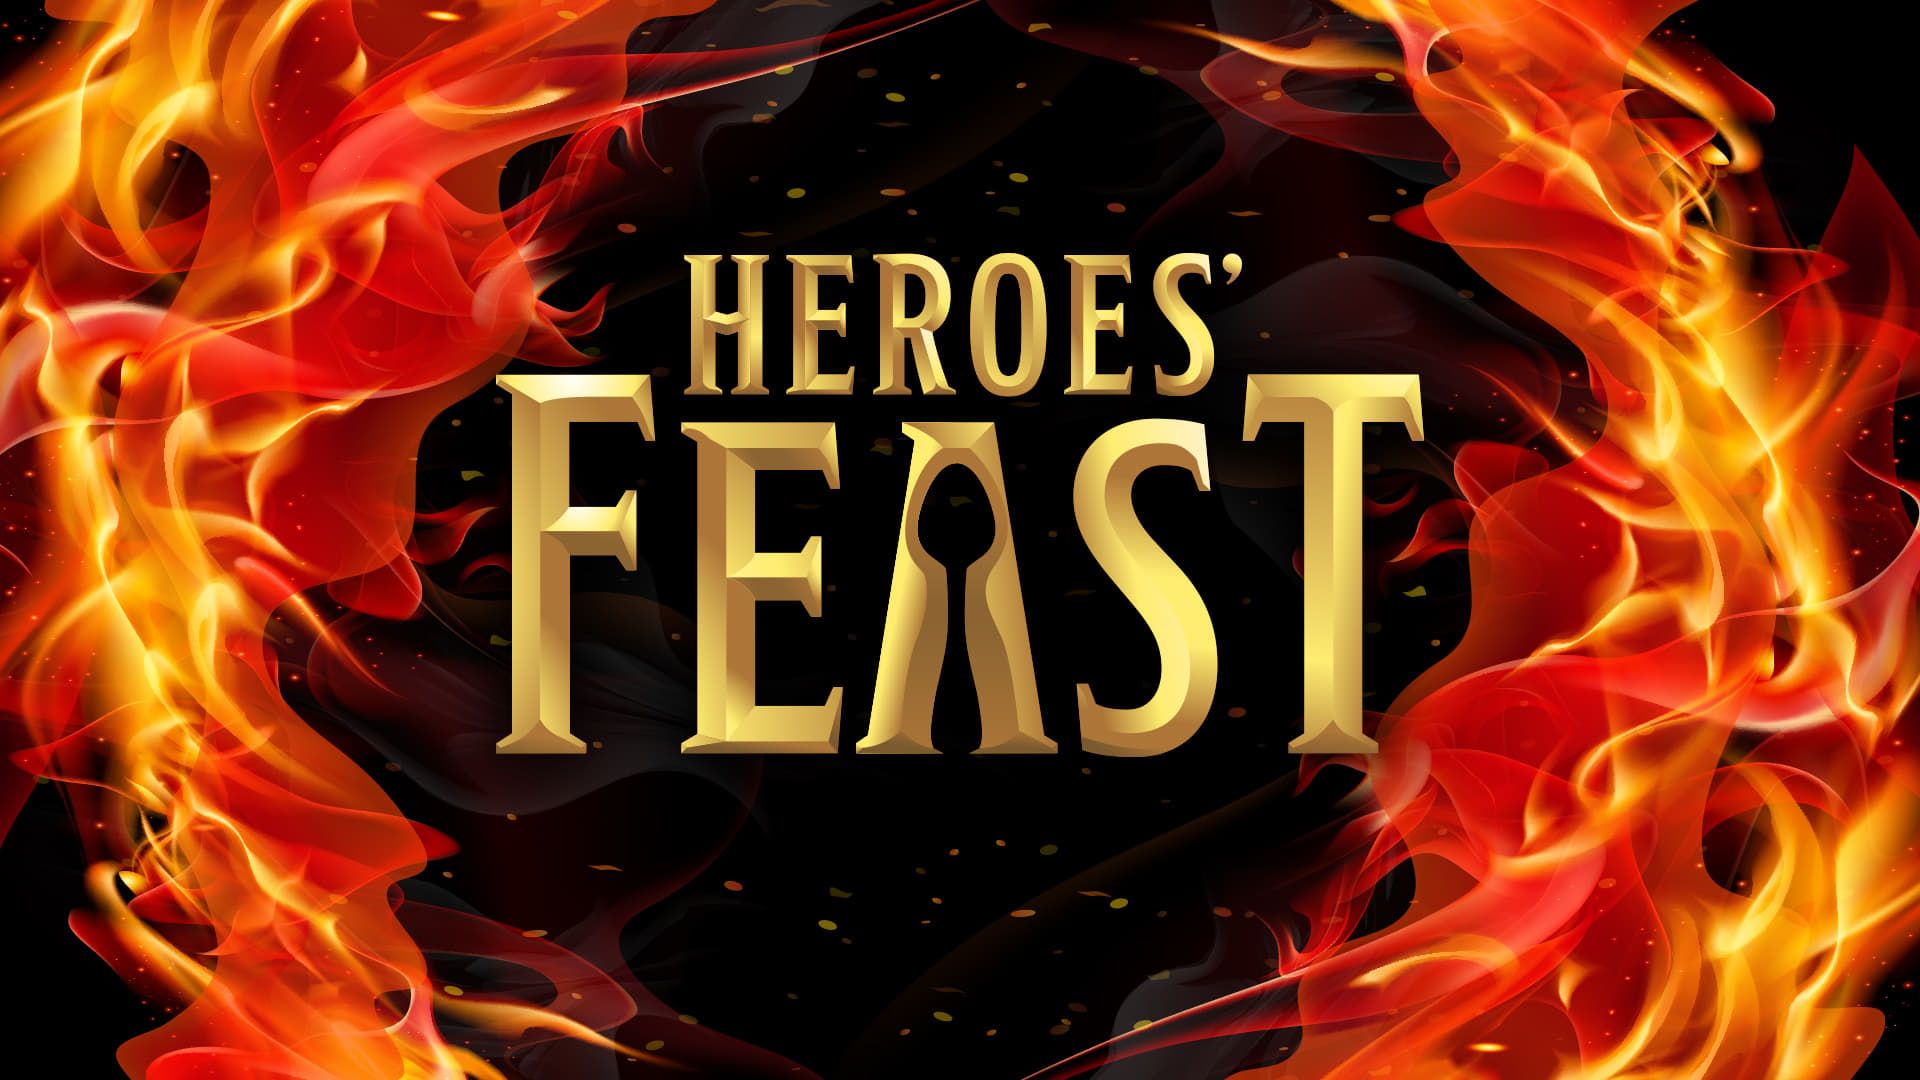 Heroes' Feast background